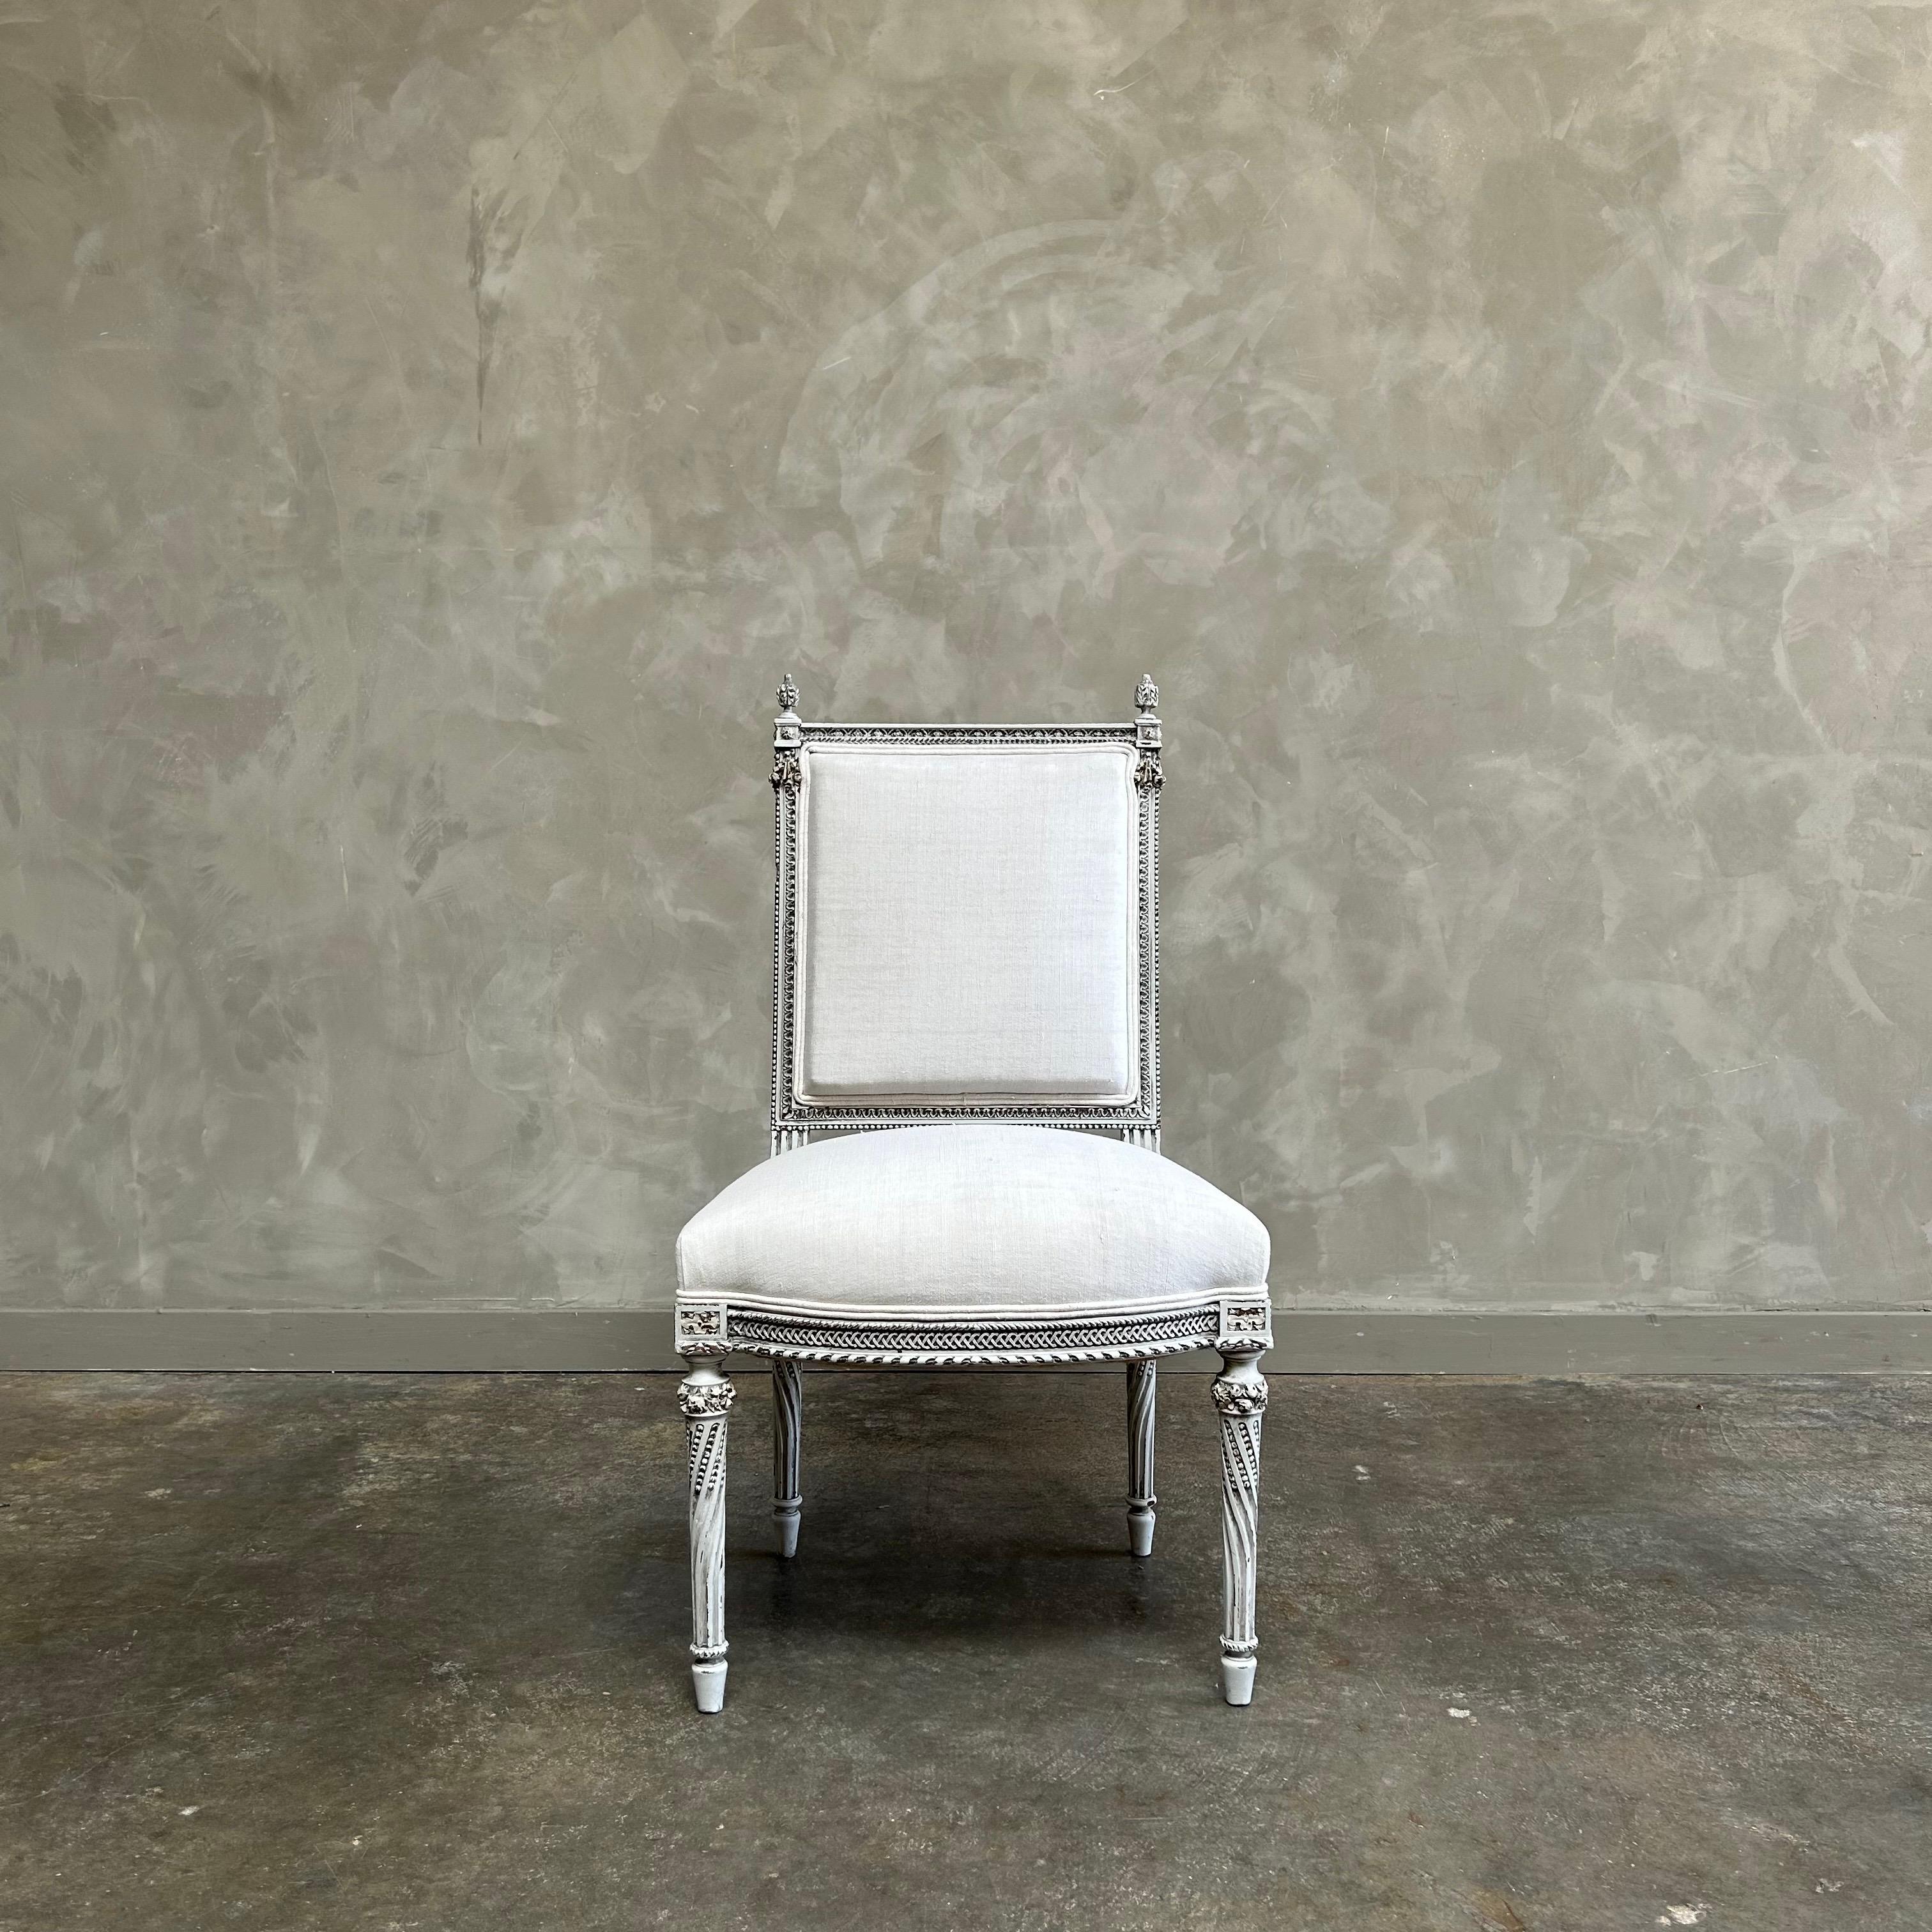 Antiker bemalter und gepolsterter Stuhl im Stil Louis XVI
Lackiert in einem oyster french gray washed finish, mit subtilen distressed edges, und gepolstert mit einem Standard Baumwollmusselin.
Solide und robust für den täglichen Gebrauch.
Antiker